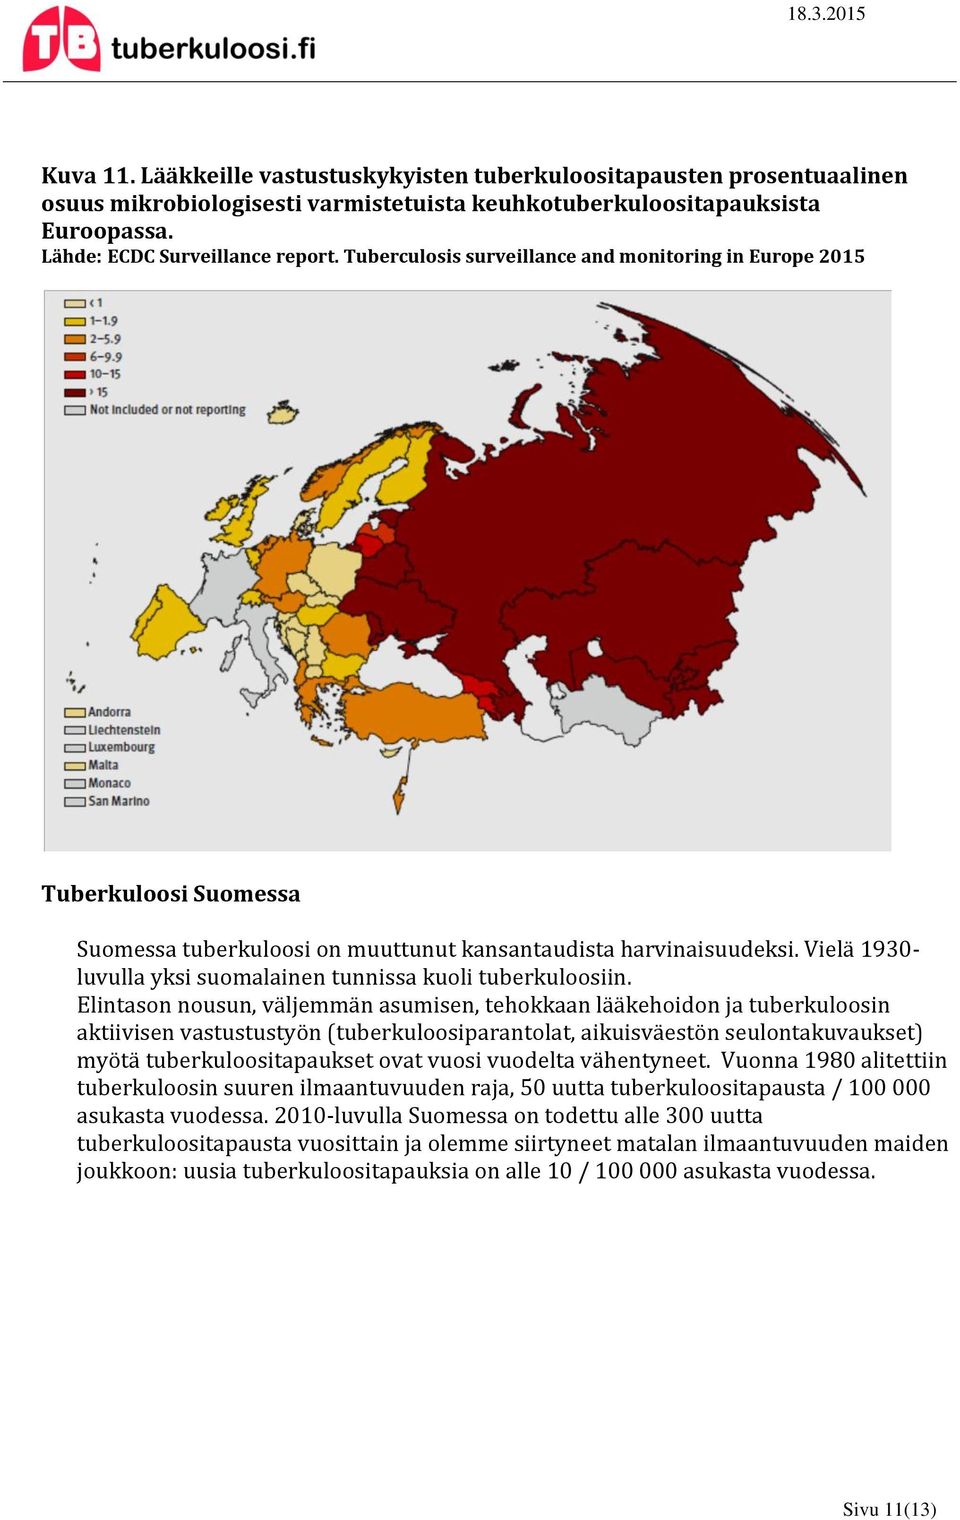 Vielä 1930- luvulla yksi suomalainen tunnissa kuoli tuberkuloosiin.